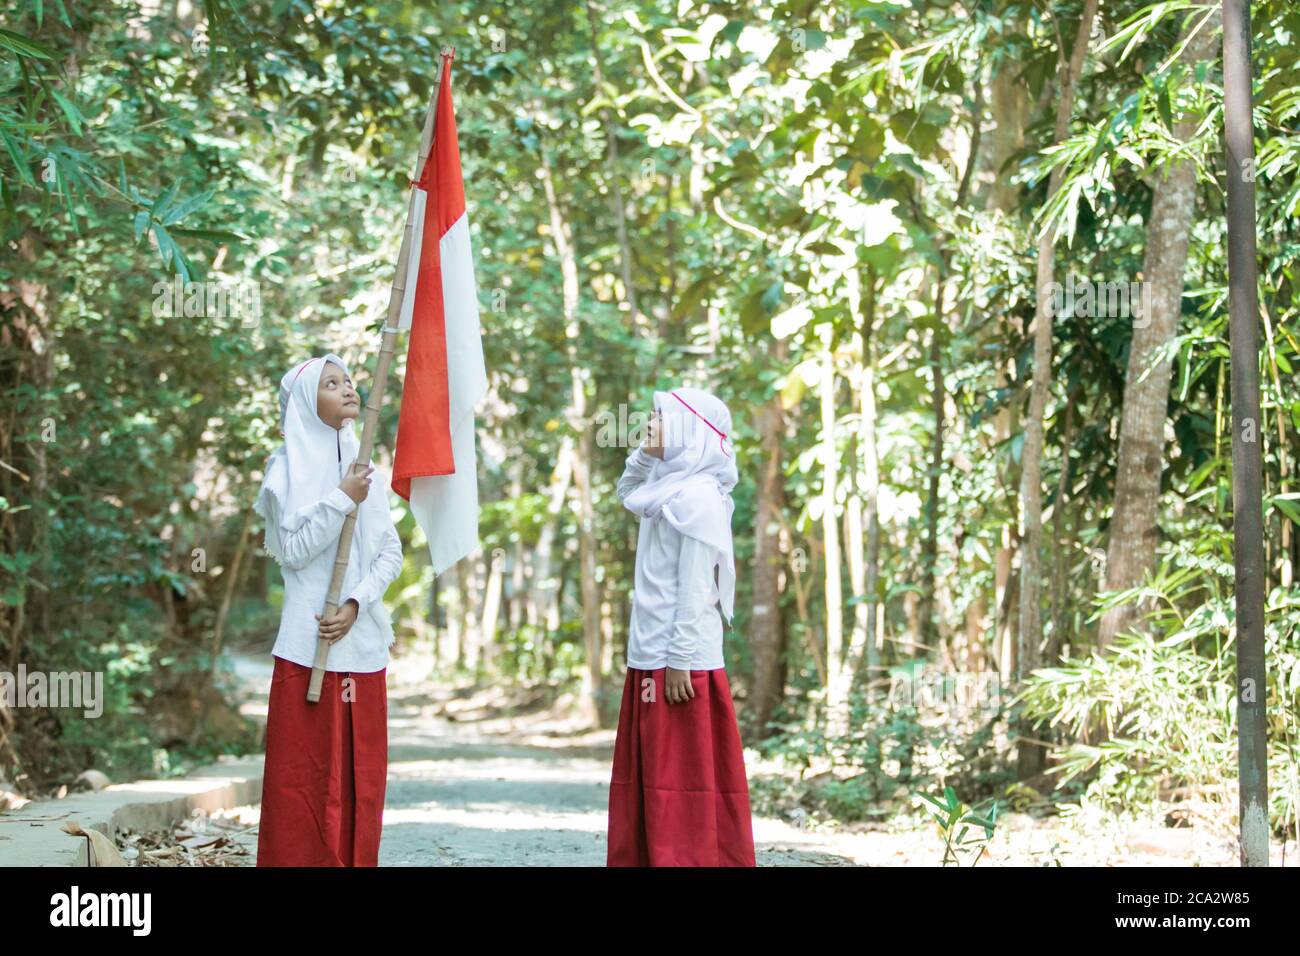 Deux petites filles musulmanes portant des voiles portant un drapeau rouge et blanc et l'autre fille se saluant sur un fond d'arbre Banque D'Images